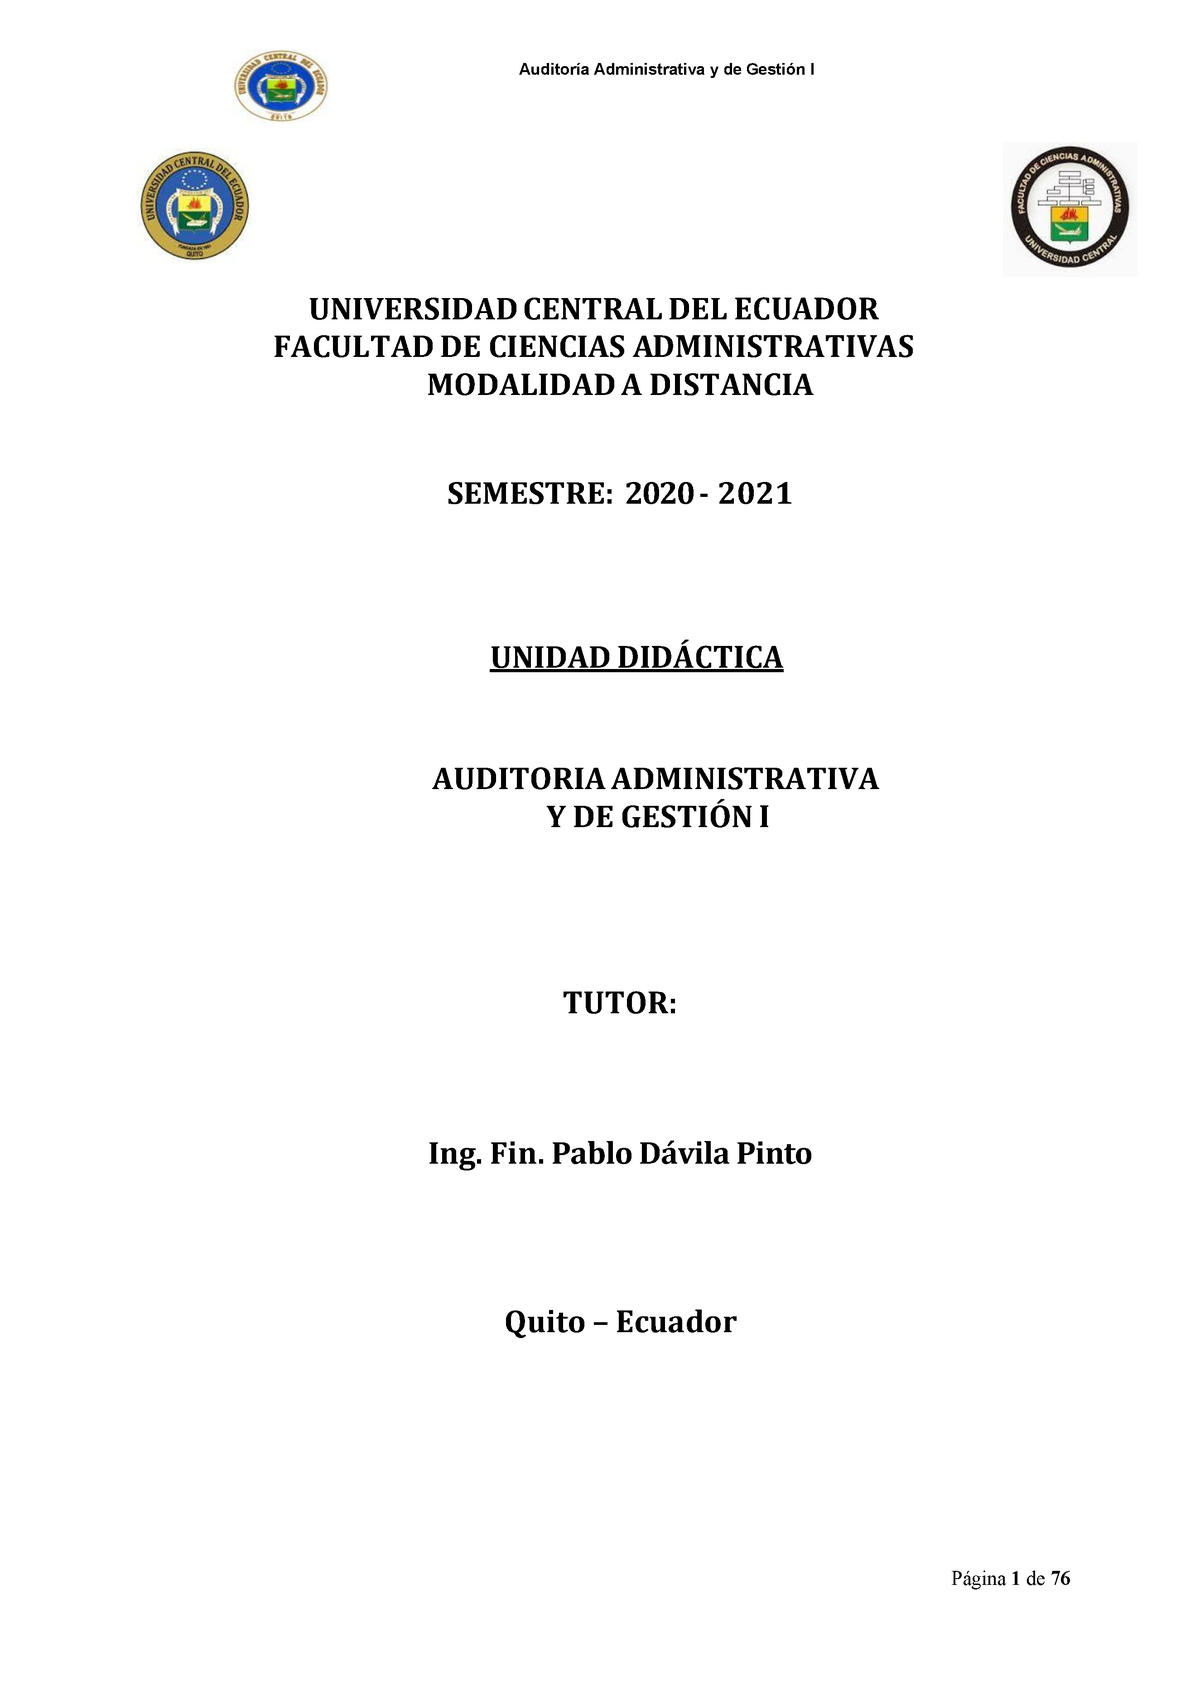 CA7- Unidad Didactica- Auditoria Administrativa Y DE Gestión I -  UNIVERSIDAD CENTRAL DEL ECUADOR - Studocu